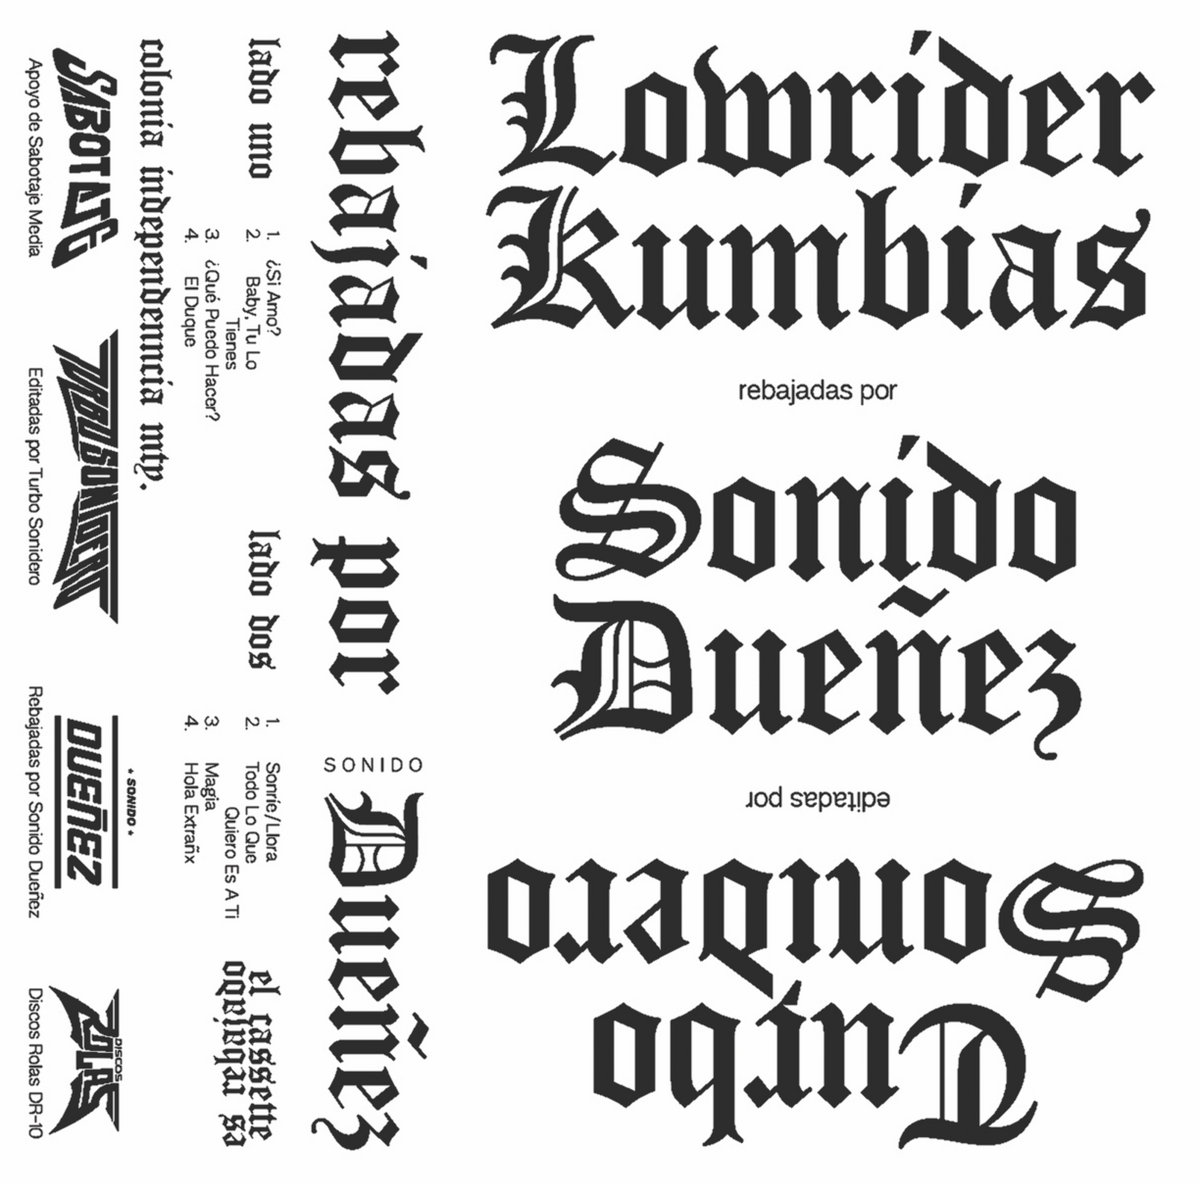 Turbo Sonidero - Lowrider Kumbias Rebajada Por Sonido Due​ñ​ez : CASSETTE